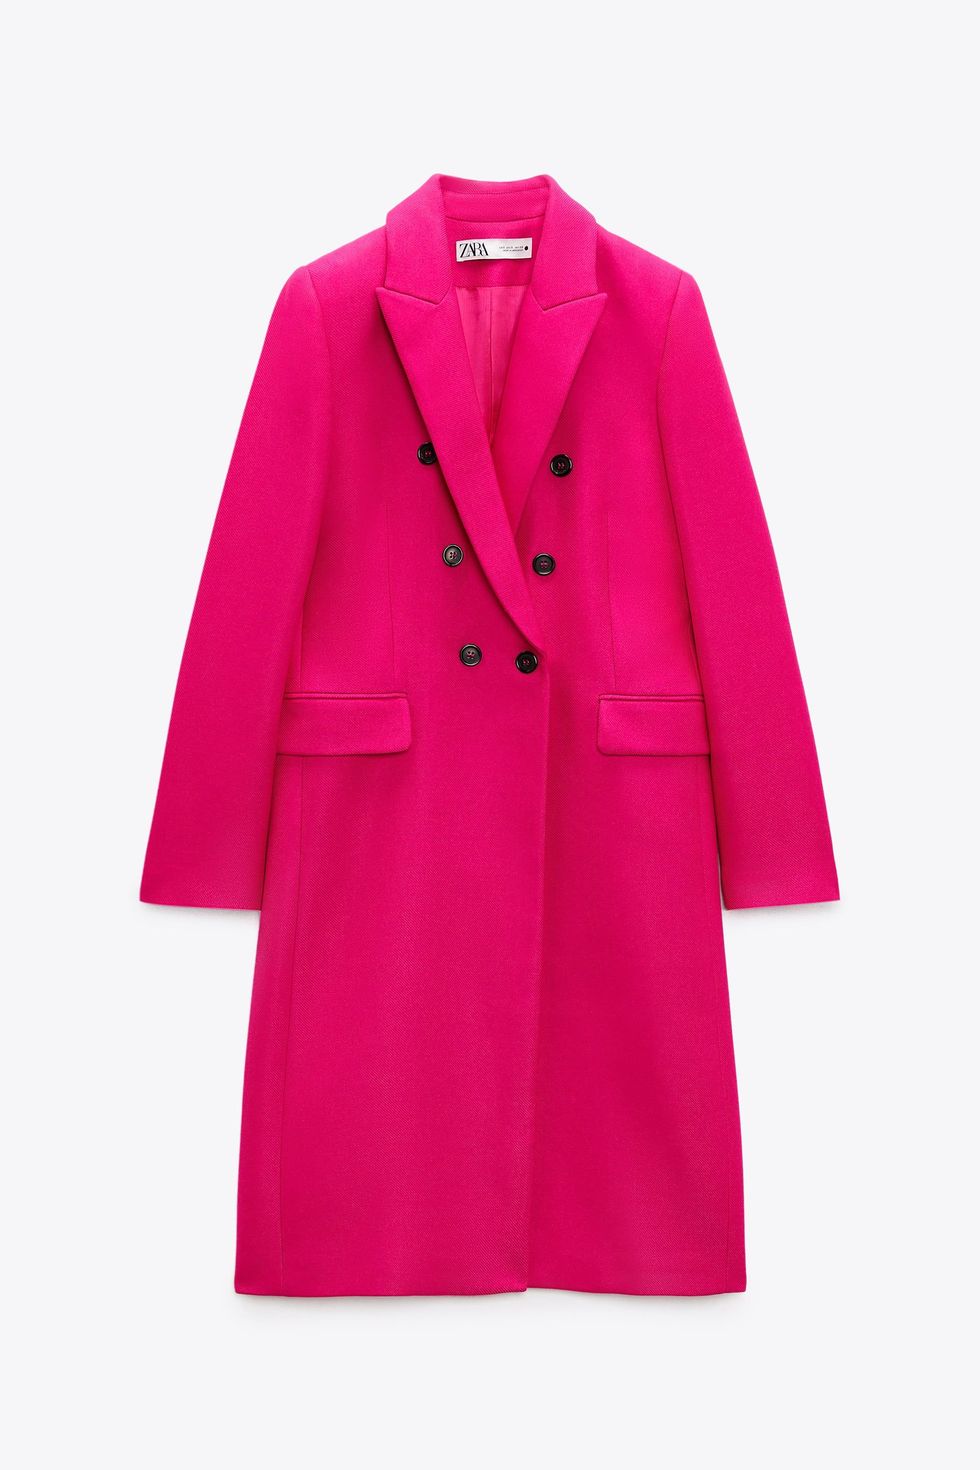 El abrigo tipo plumífero más bonito de Zara,rebajado por sorpresa